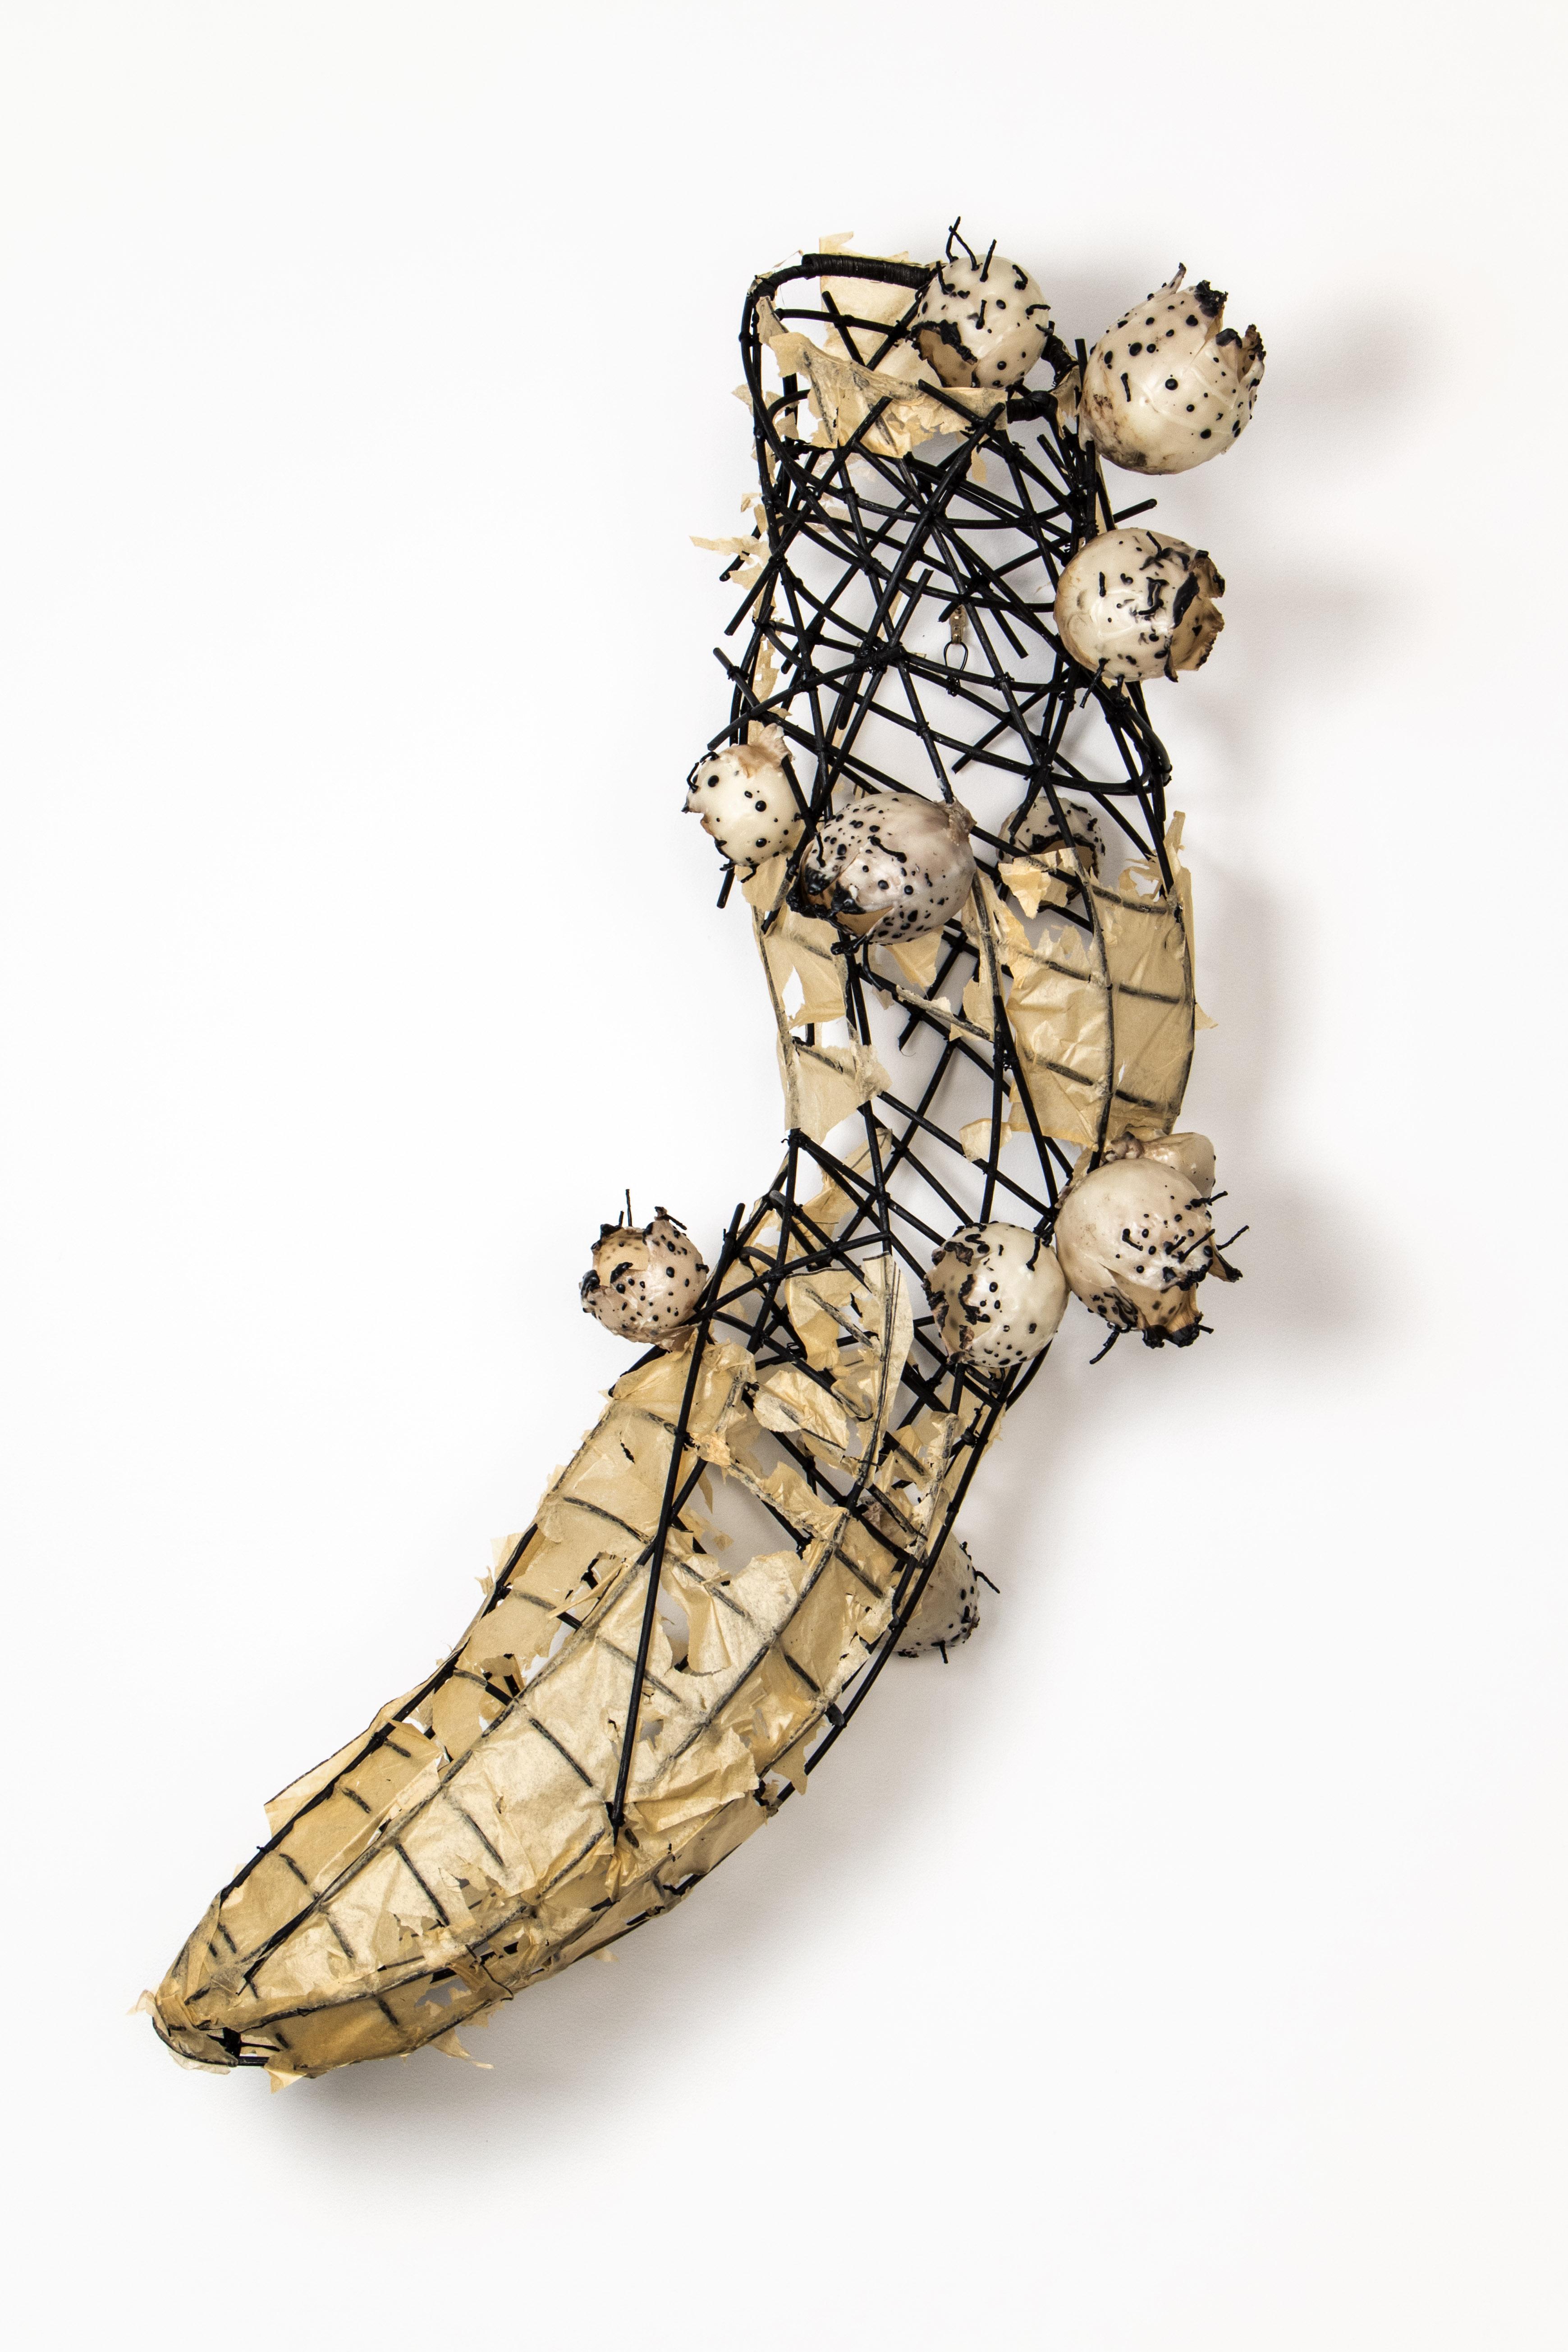 Eileen Braun Abstract Sculpture - Wall sculpture: "Life Under the Microscope"